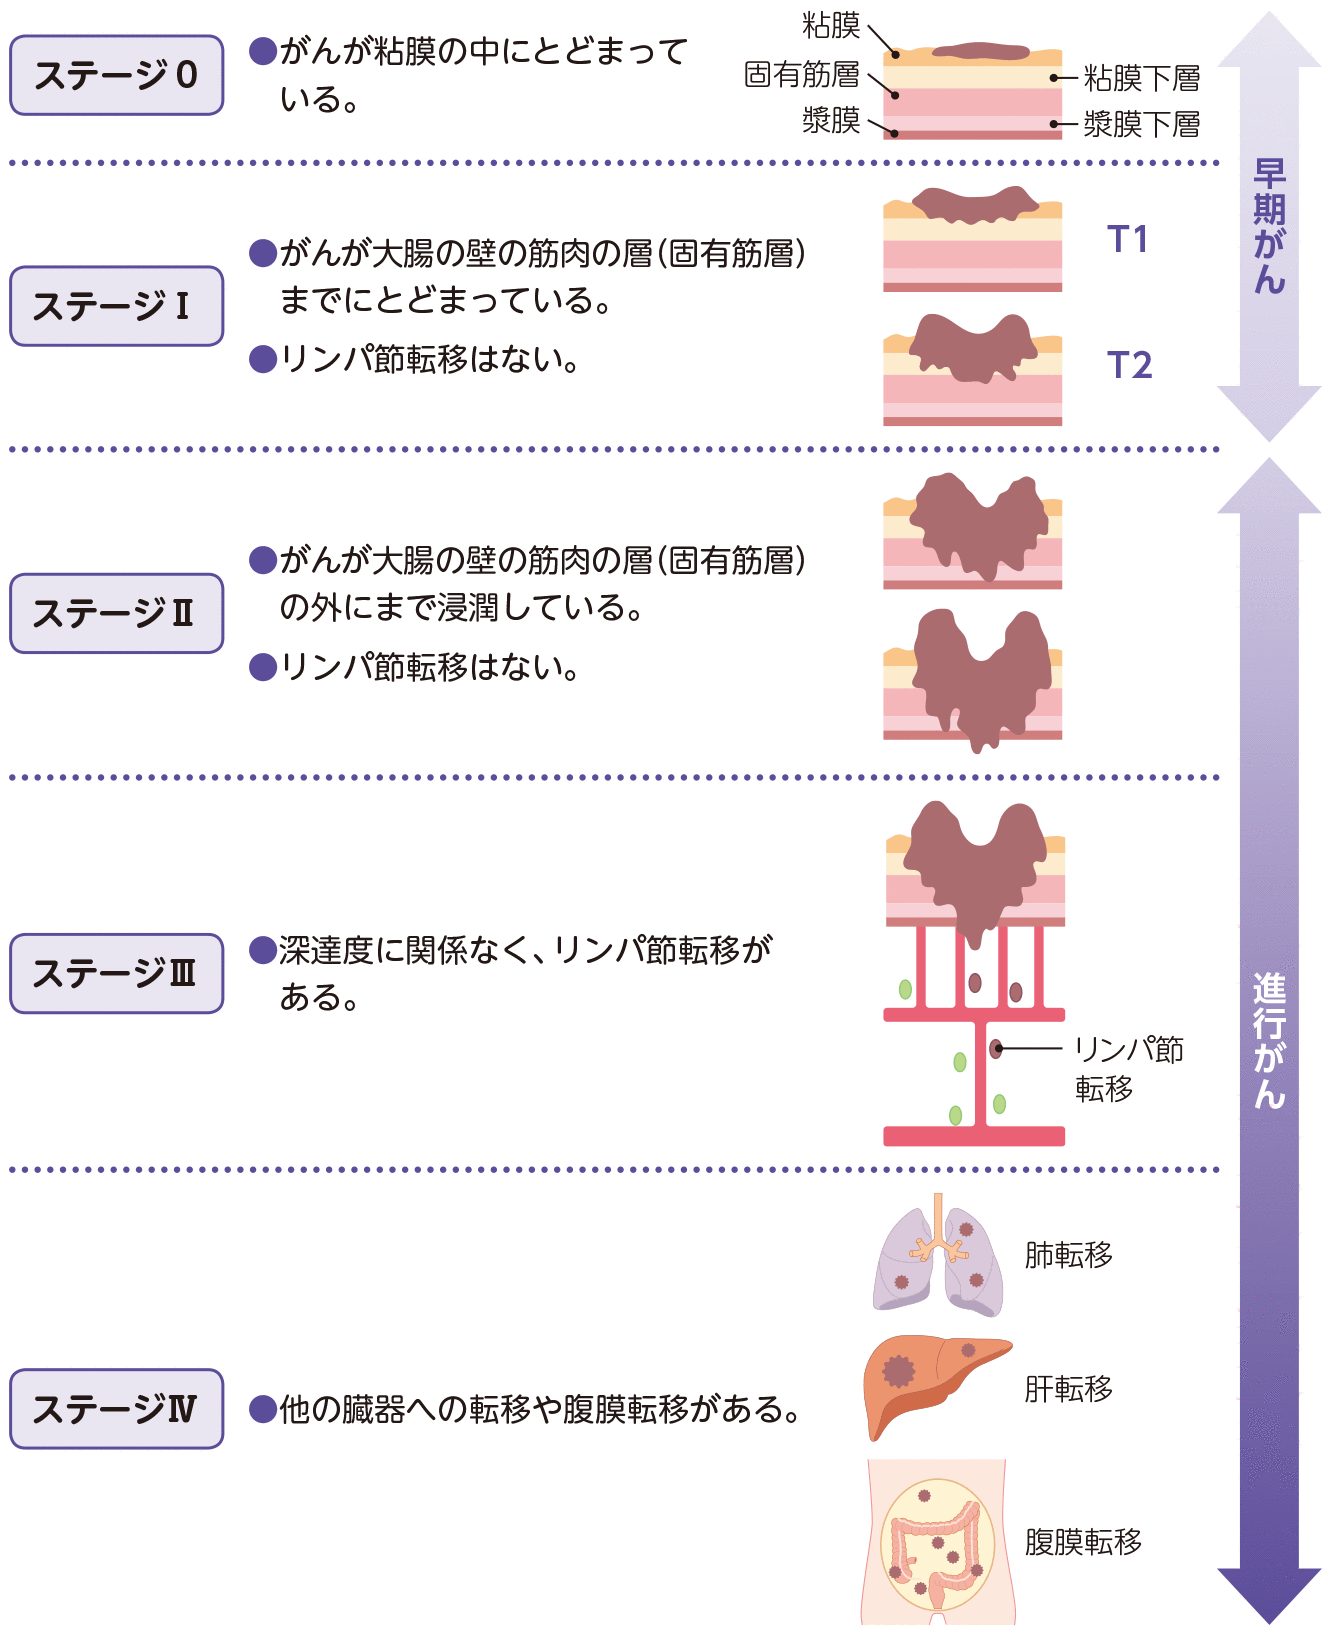 大腸がんの臨床病期（ステージ）分類